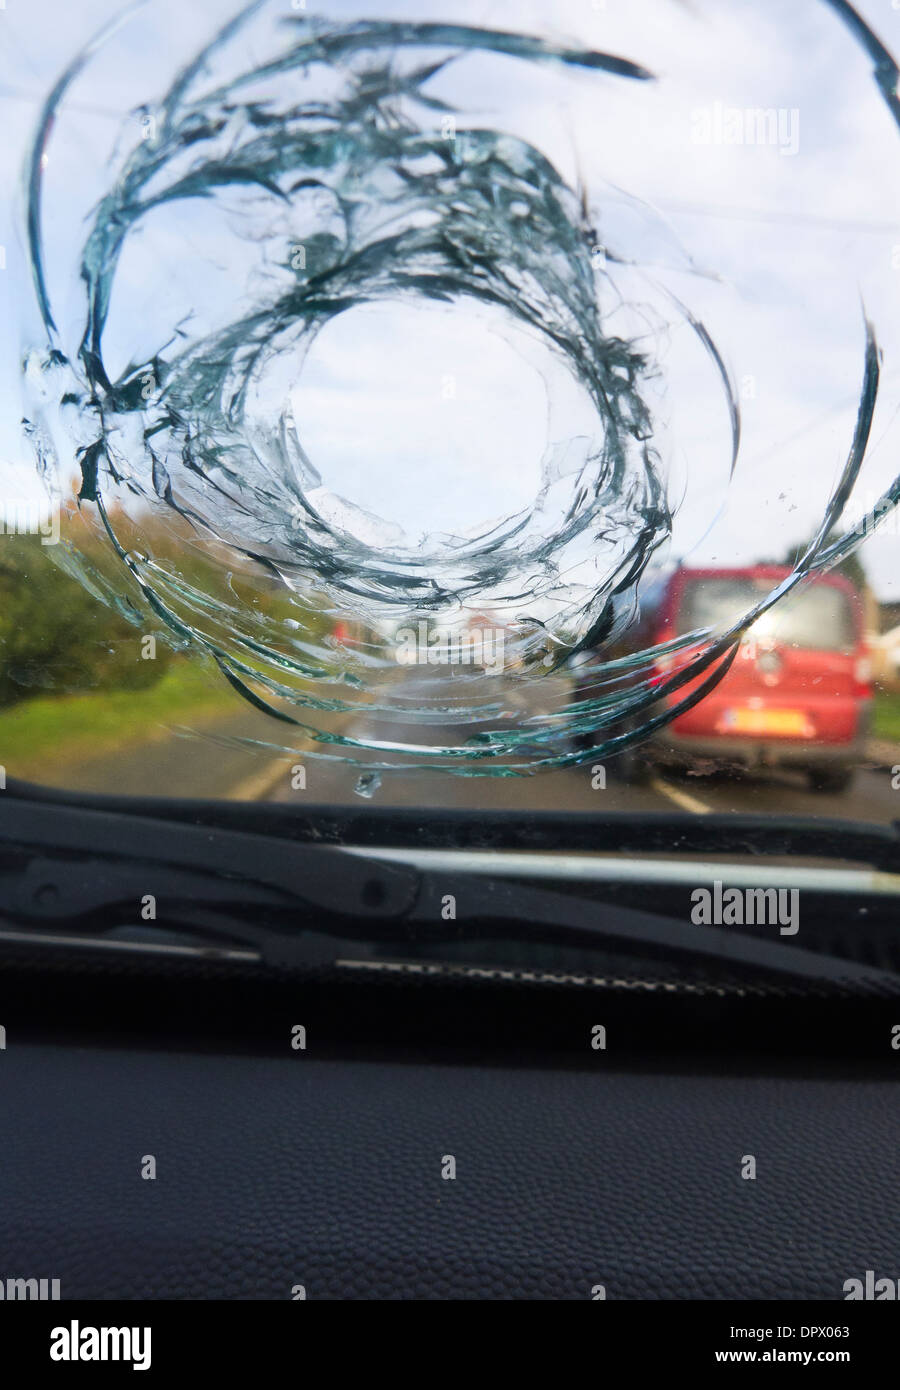 parabrisas roto de un coche por un disparo de una bolsa de aire a una  profundidad de campo baja Fotografía de stock - Alamy